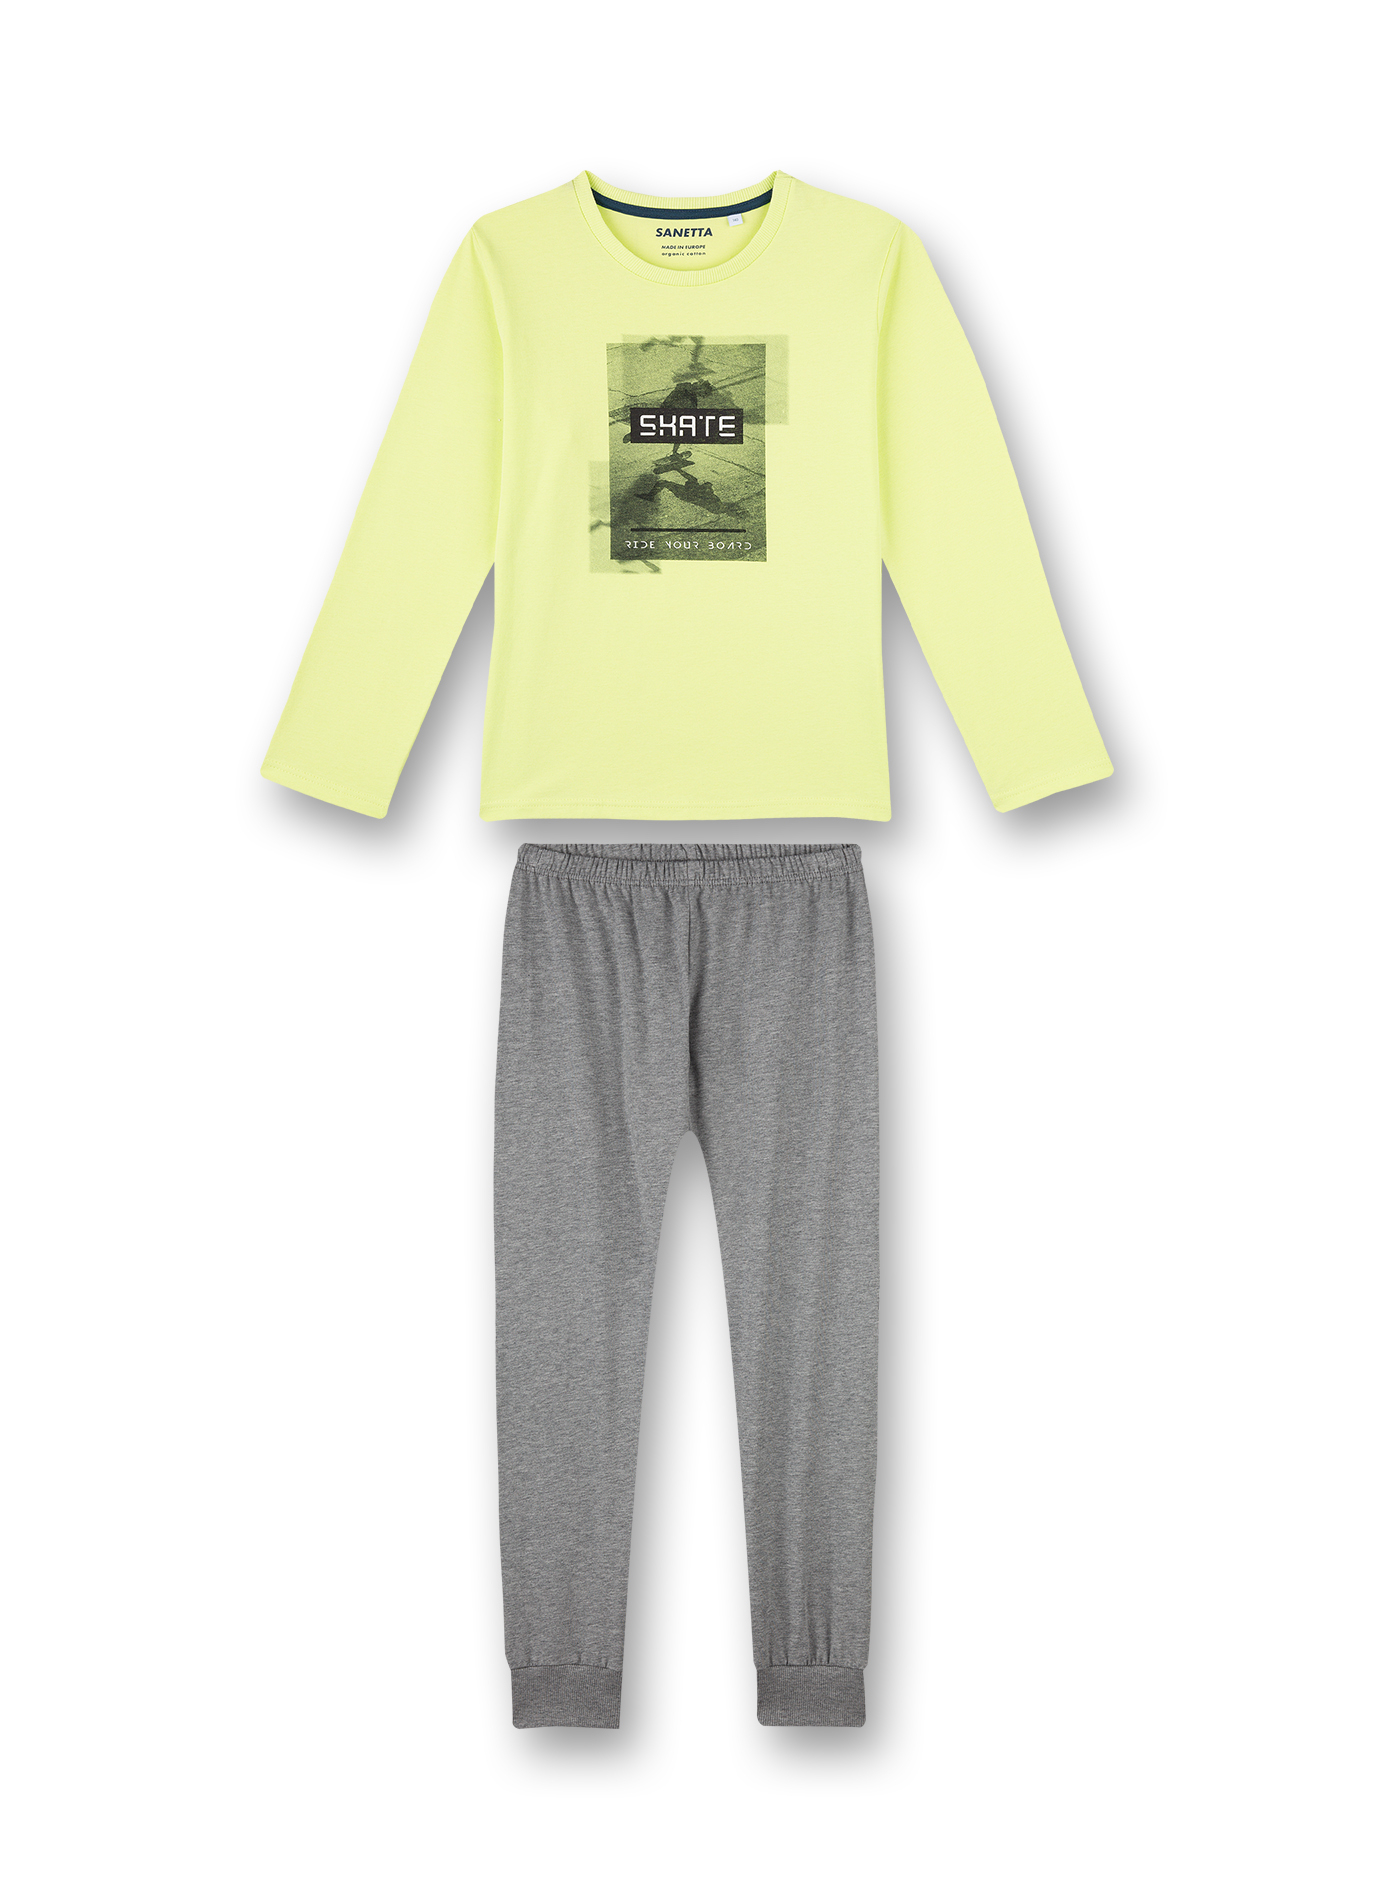 Jungen-Schlafanzug Lime-Gelb Skate